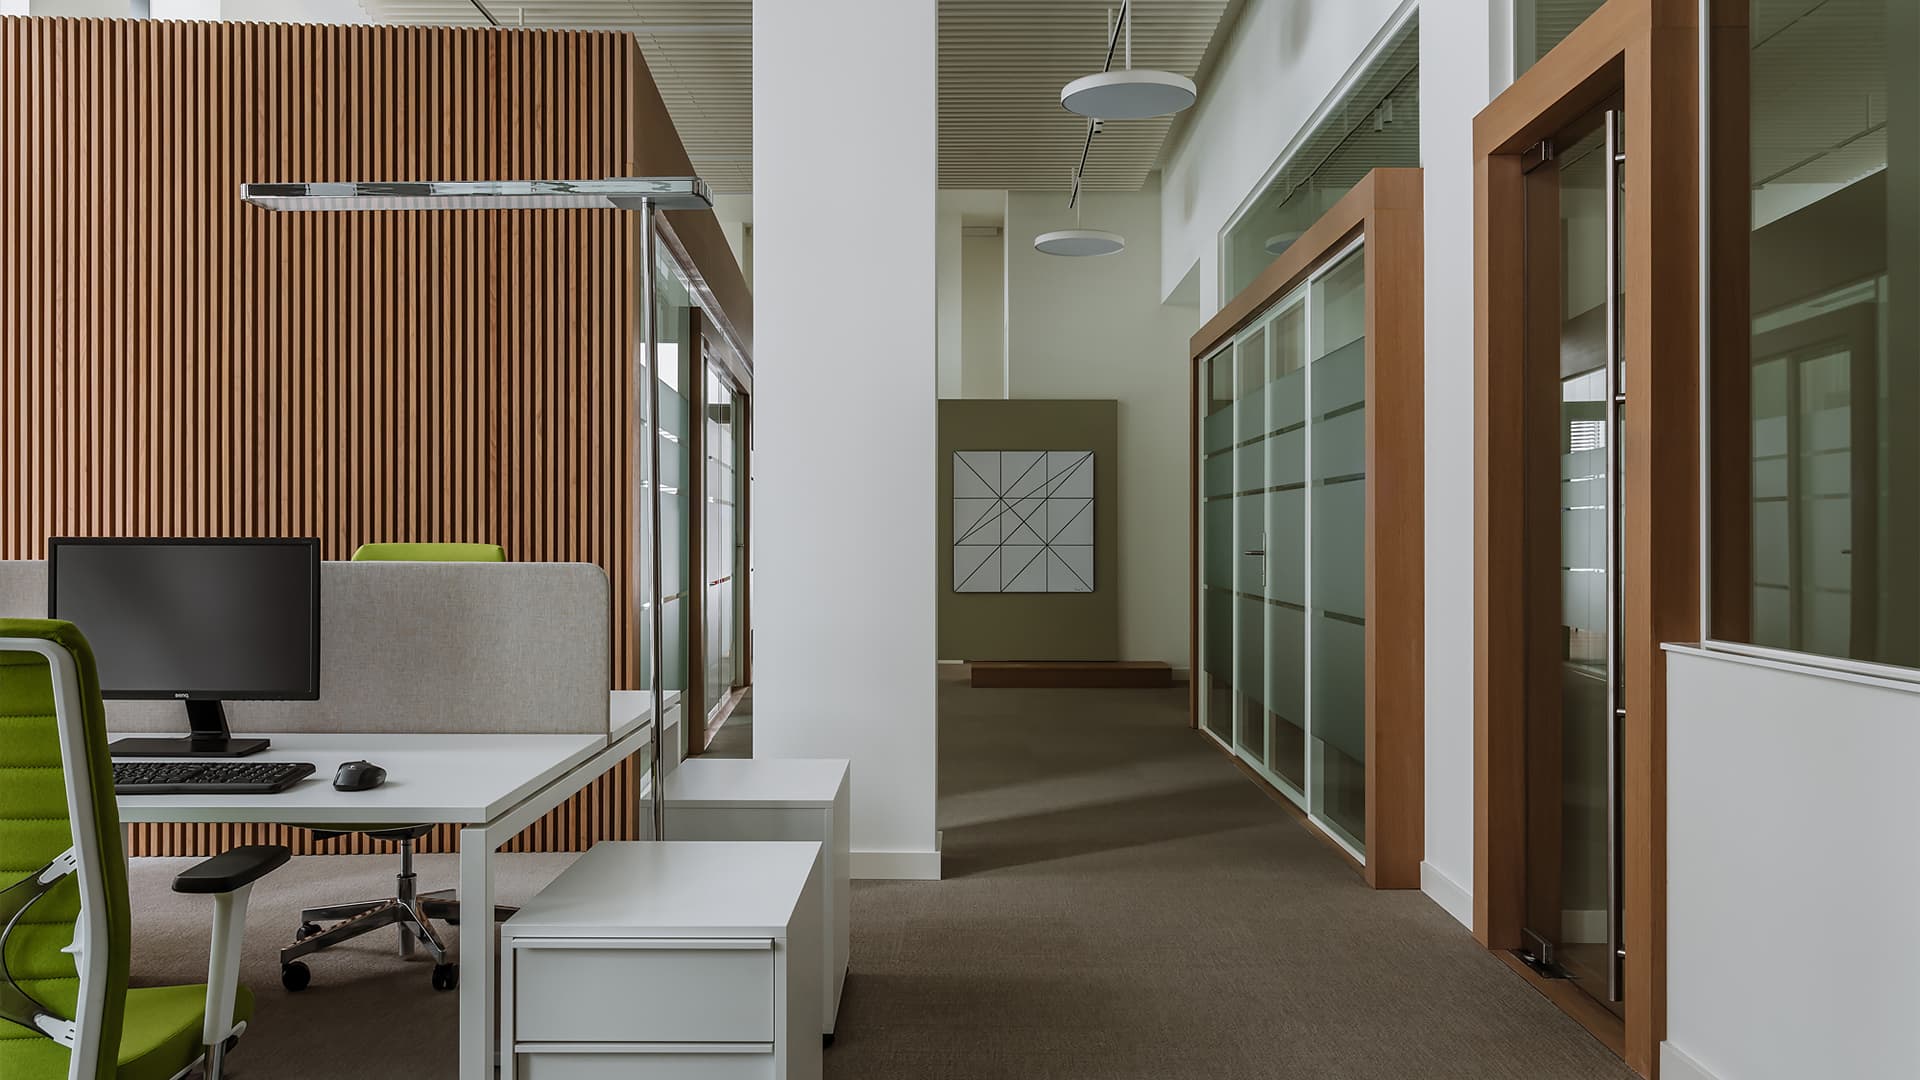 «Тихая роскошь» в интерьере офиса с акцентной мебелью и культовыми светильниками — проект архитектурного бюро IAW RUS